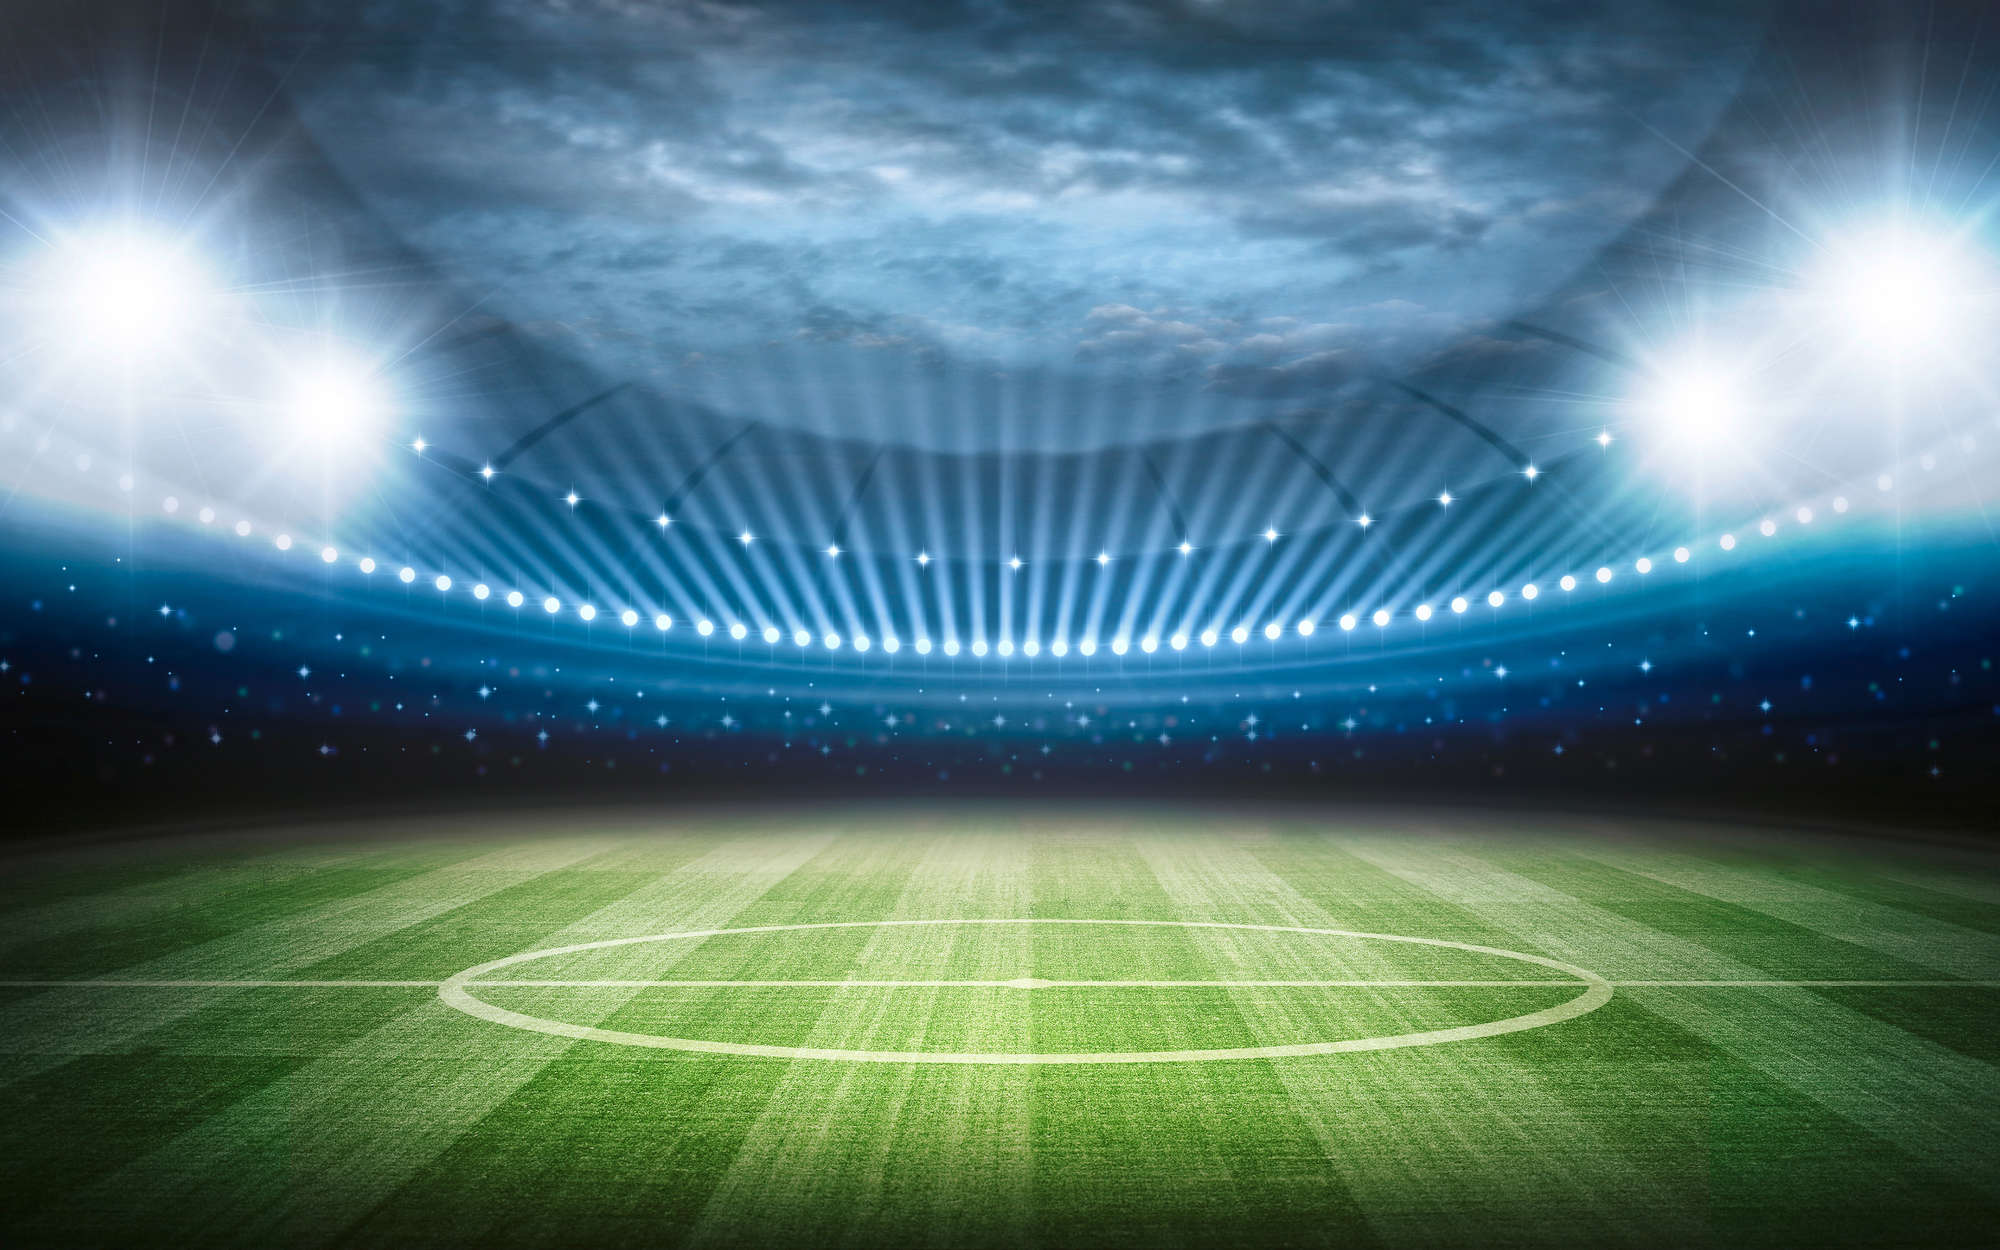             Fußball Fototapete Stadion mit Flutlicht – Mattes Glattvlies
        